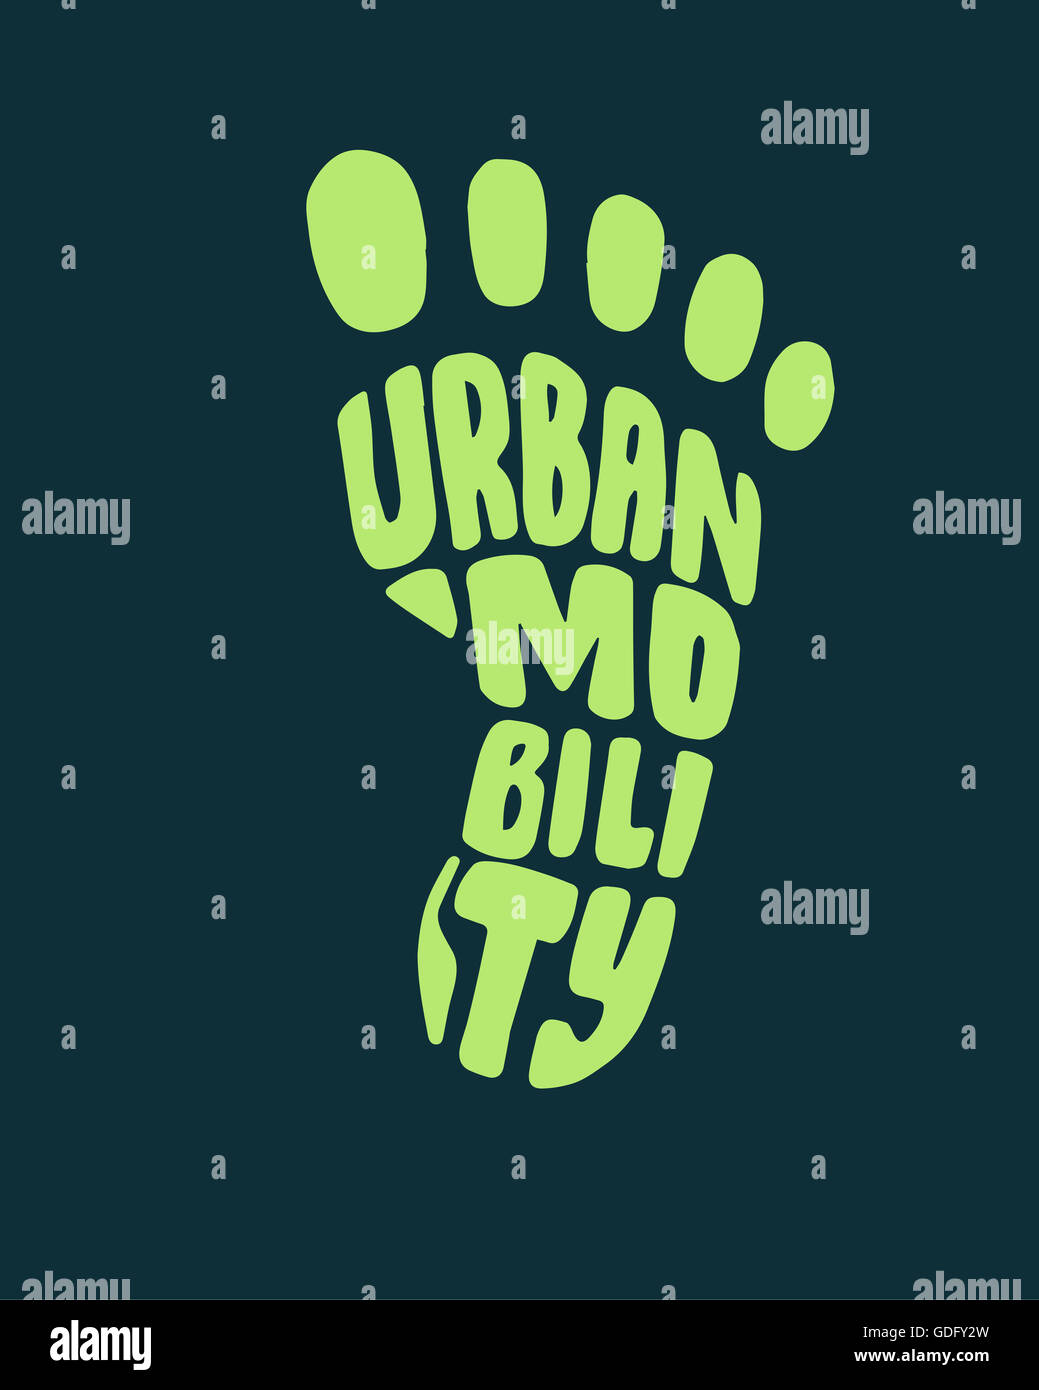 Ilustración dibujada a mano o un dibujo de una silueta de pie con la frase: la movilidad urbana Foto de stock